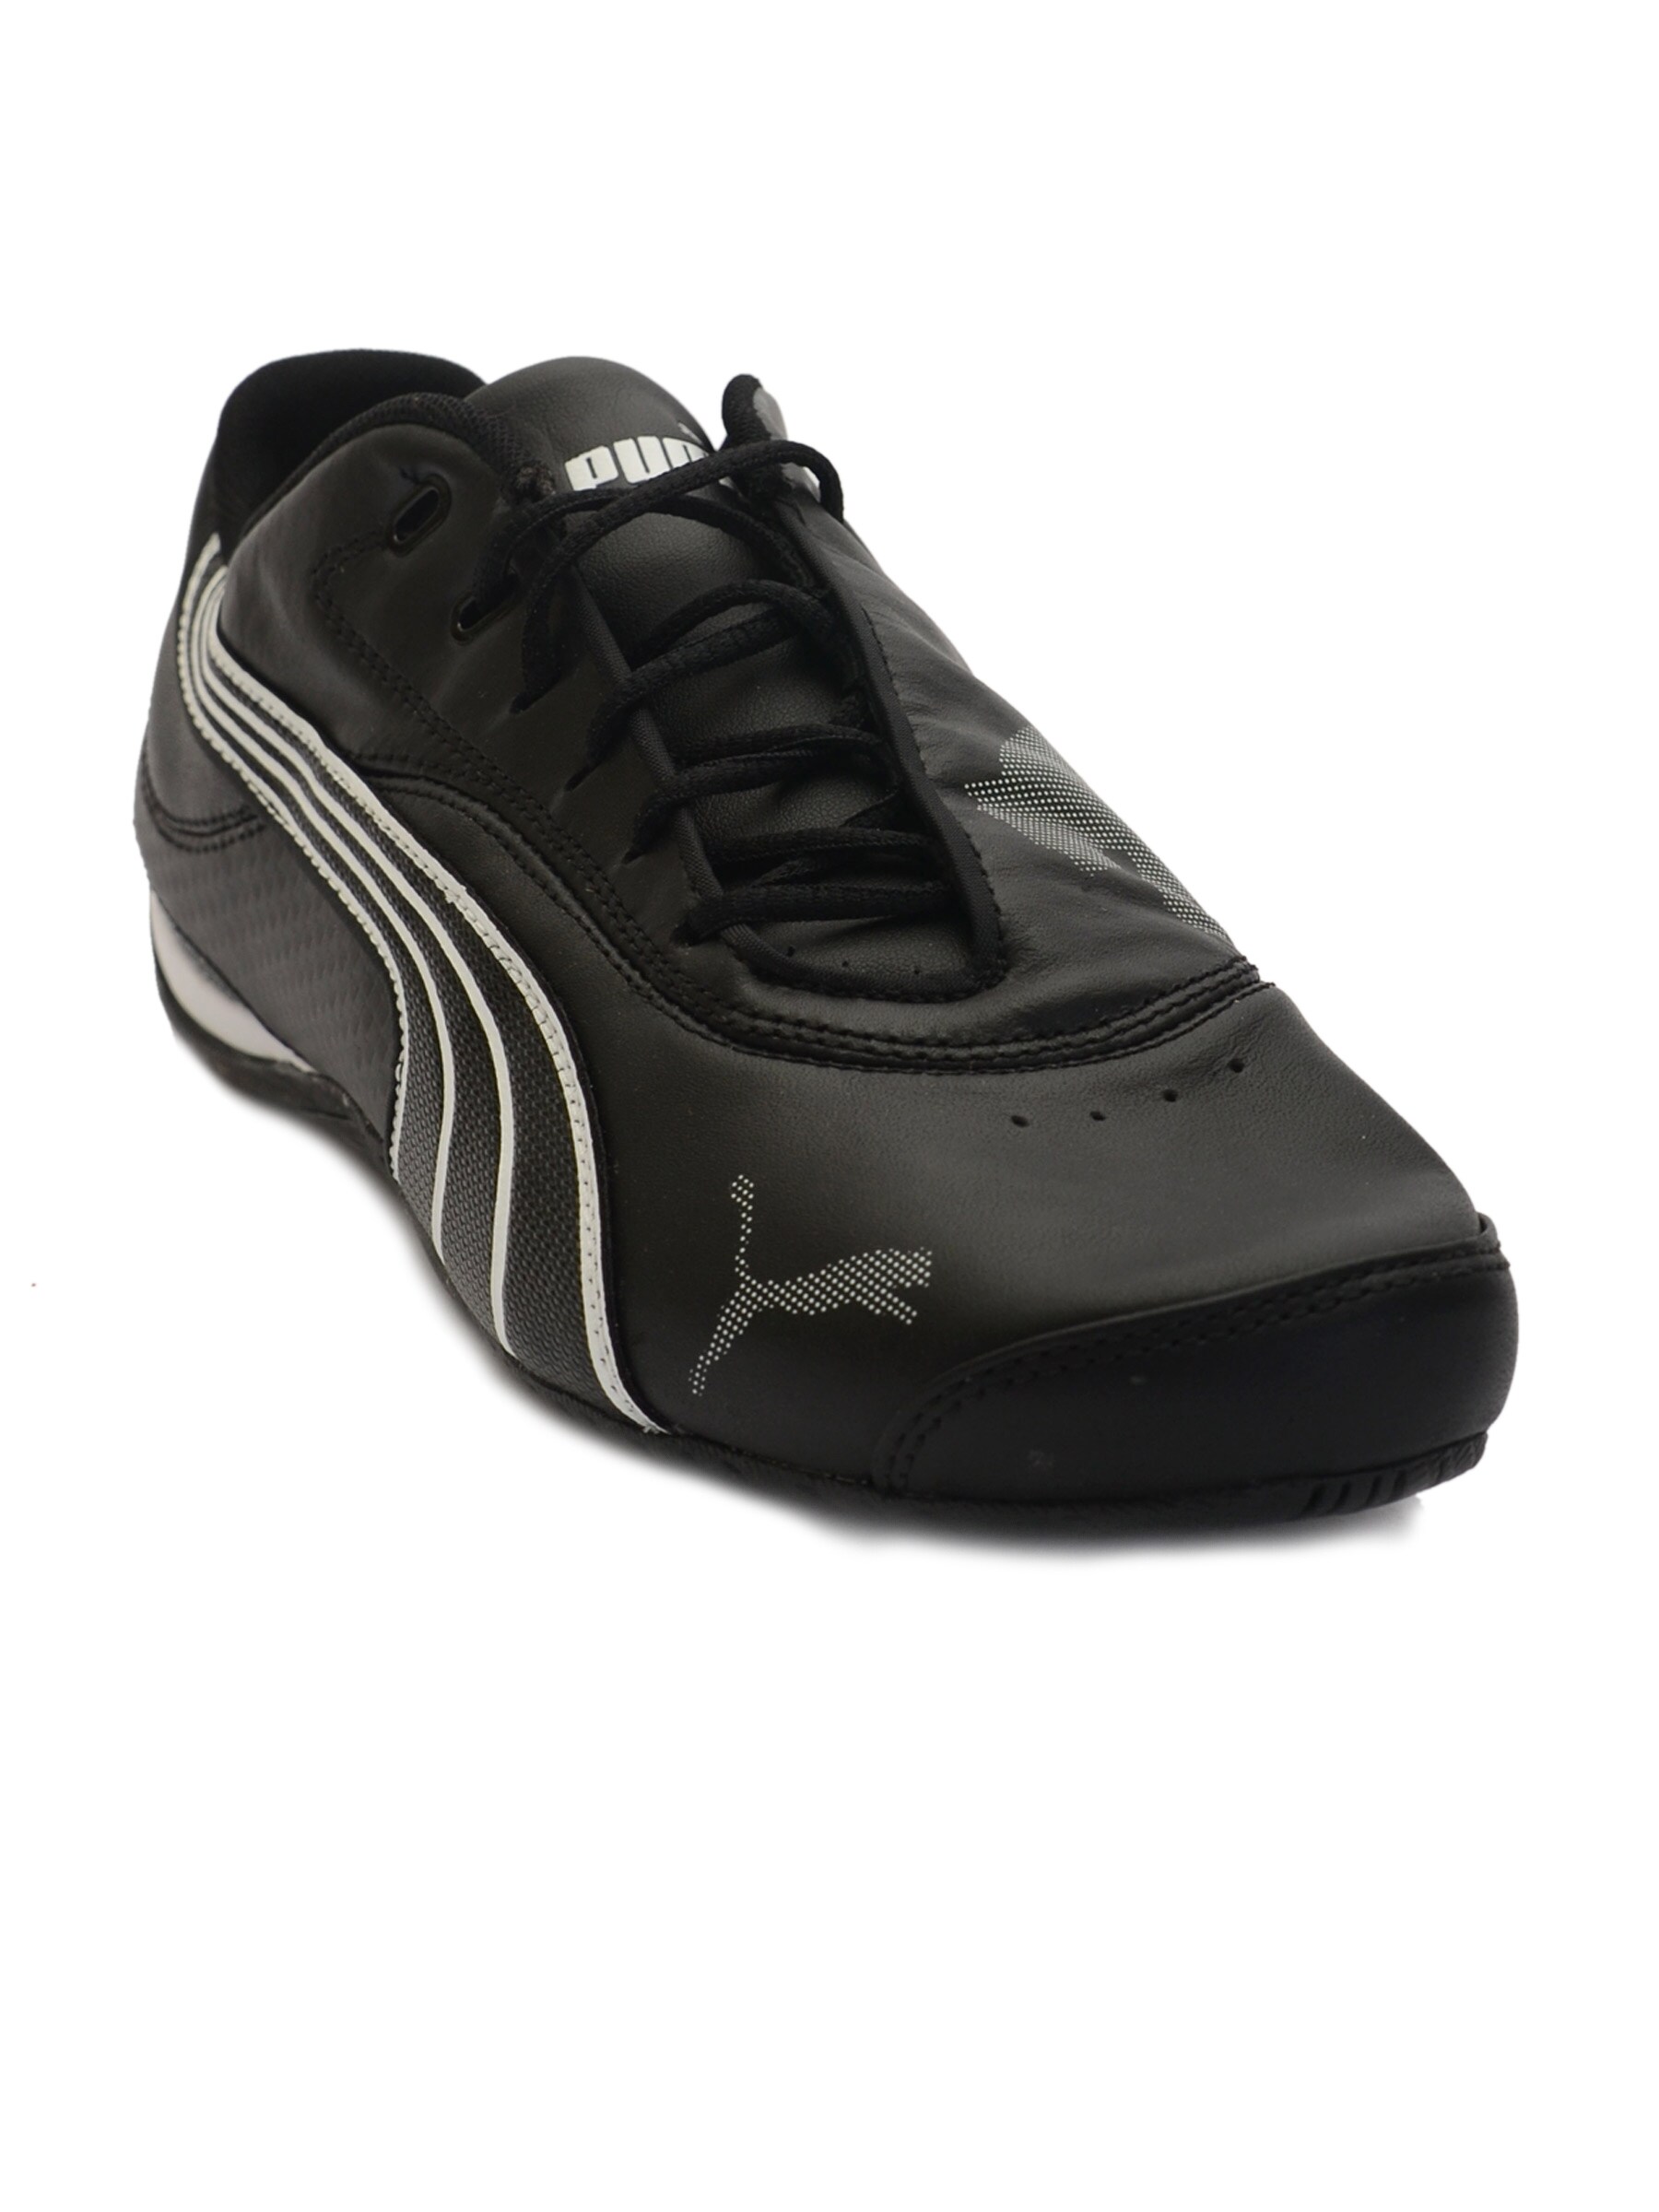 Puma Men Drift Cat III NM Black Sports Shoes